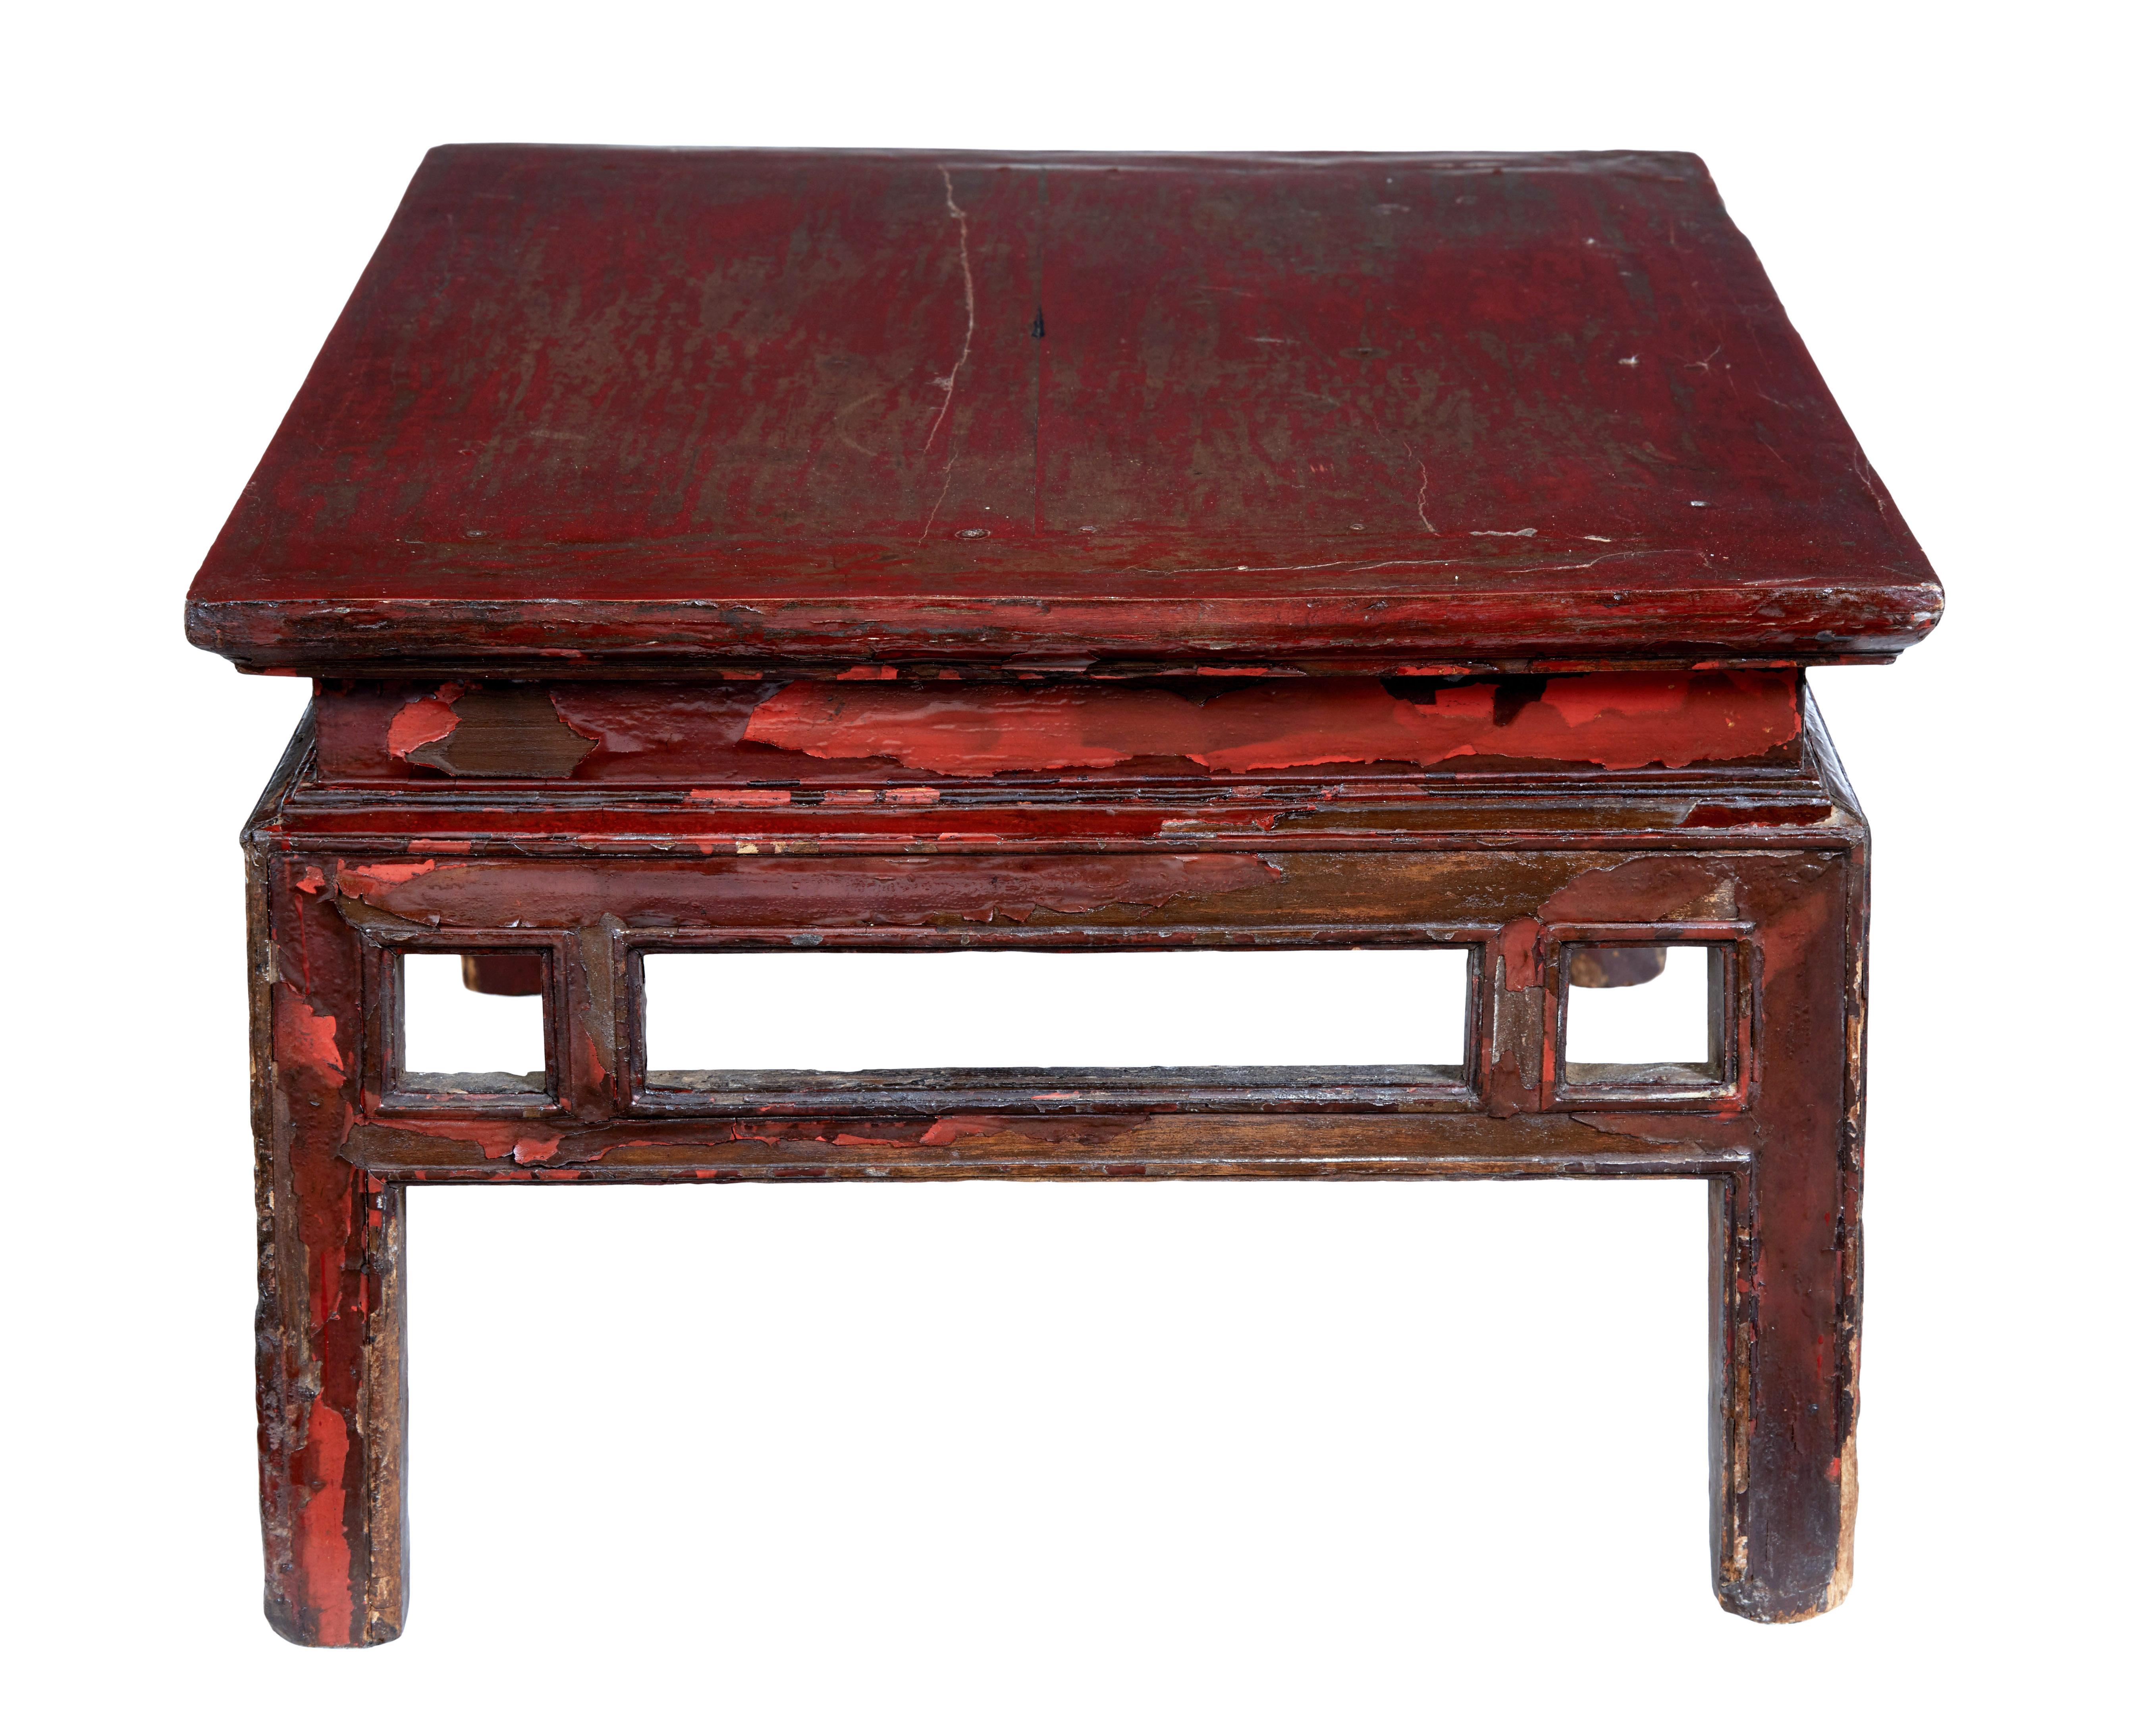 Table basse d'appoint chinoise peinte du XVIIIe siècle, vers 1780.

Nous avons ici une table d'appoint basse et pratique, richement colorée, dont la peinture est abîmée et présente au moins deux teintes, certaines zones présentant une perte totale